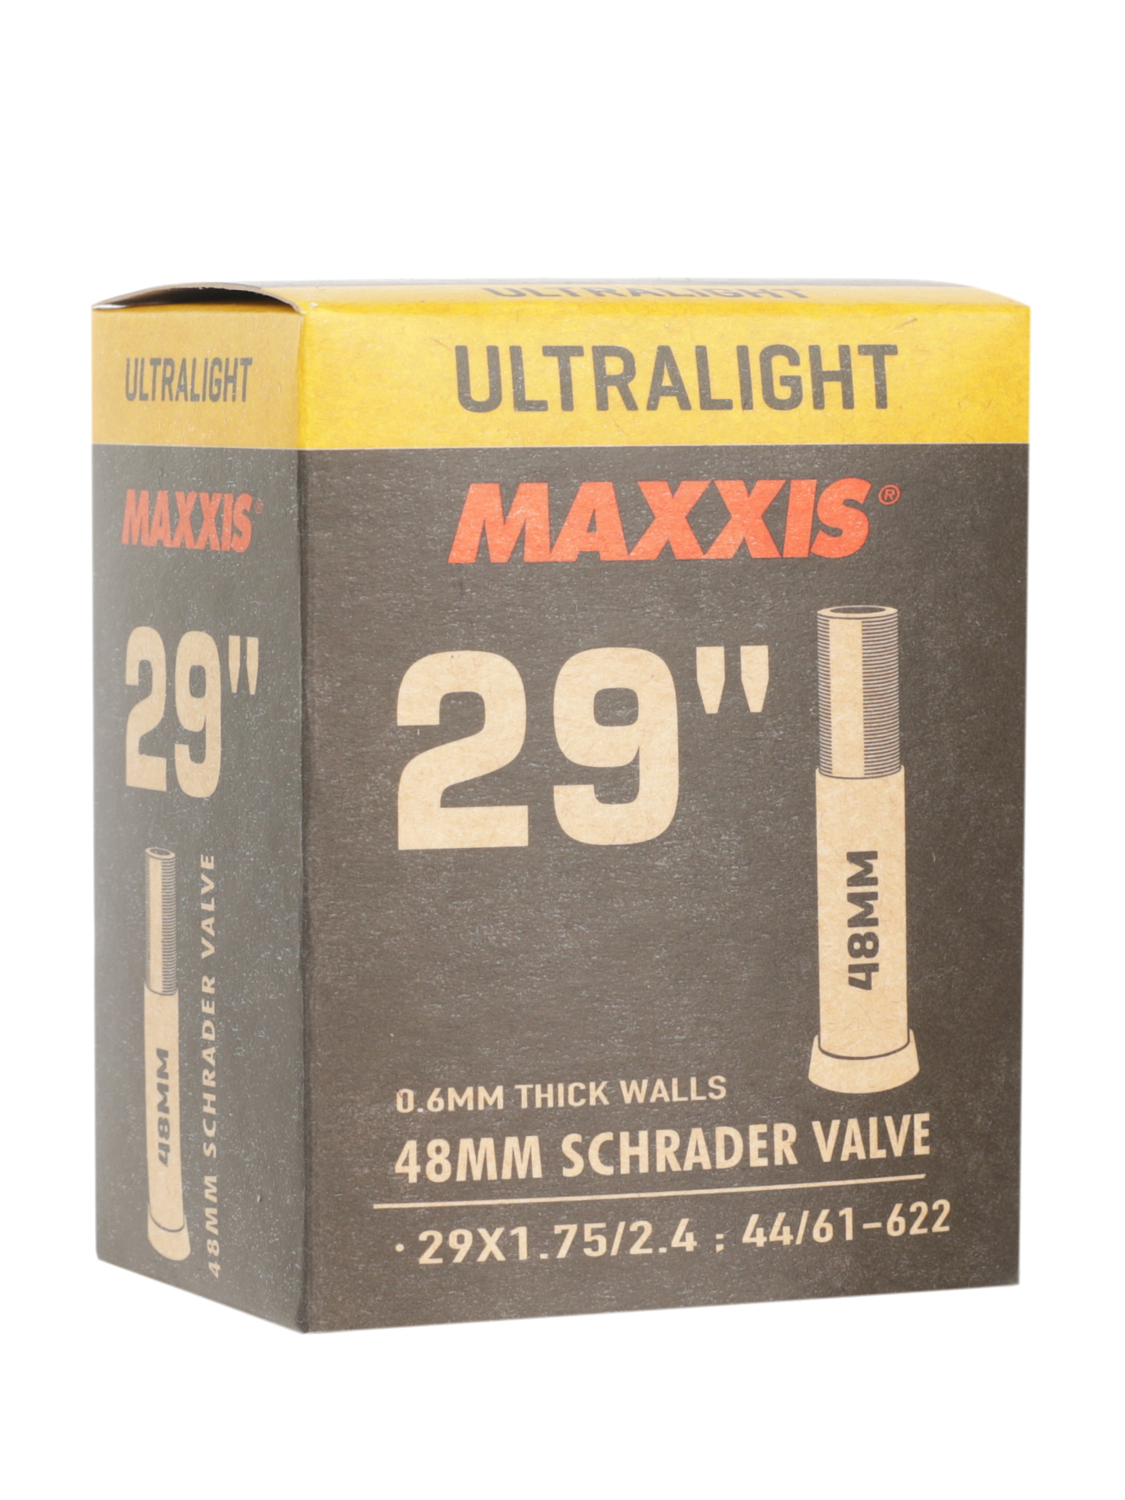 Велокамера Maxxis Ultralight 29X1.75/2.4 44/61-622 0.6mm Автониппель 48 мм+